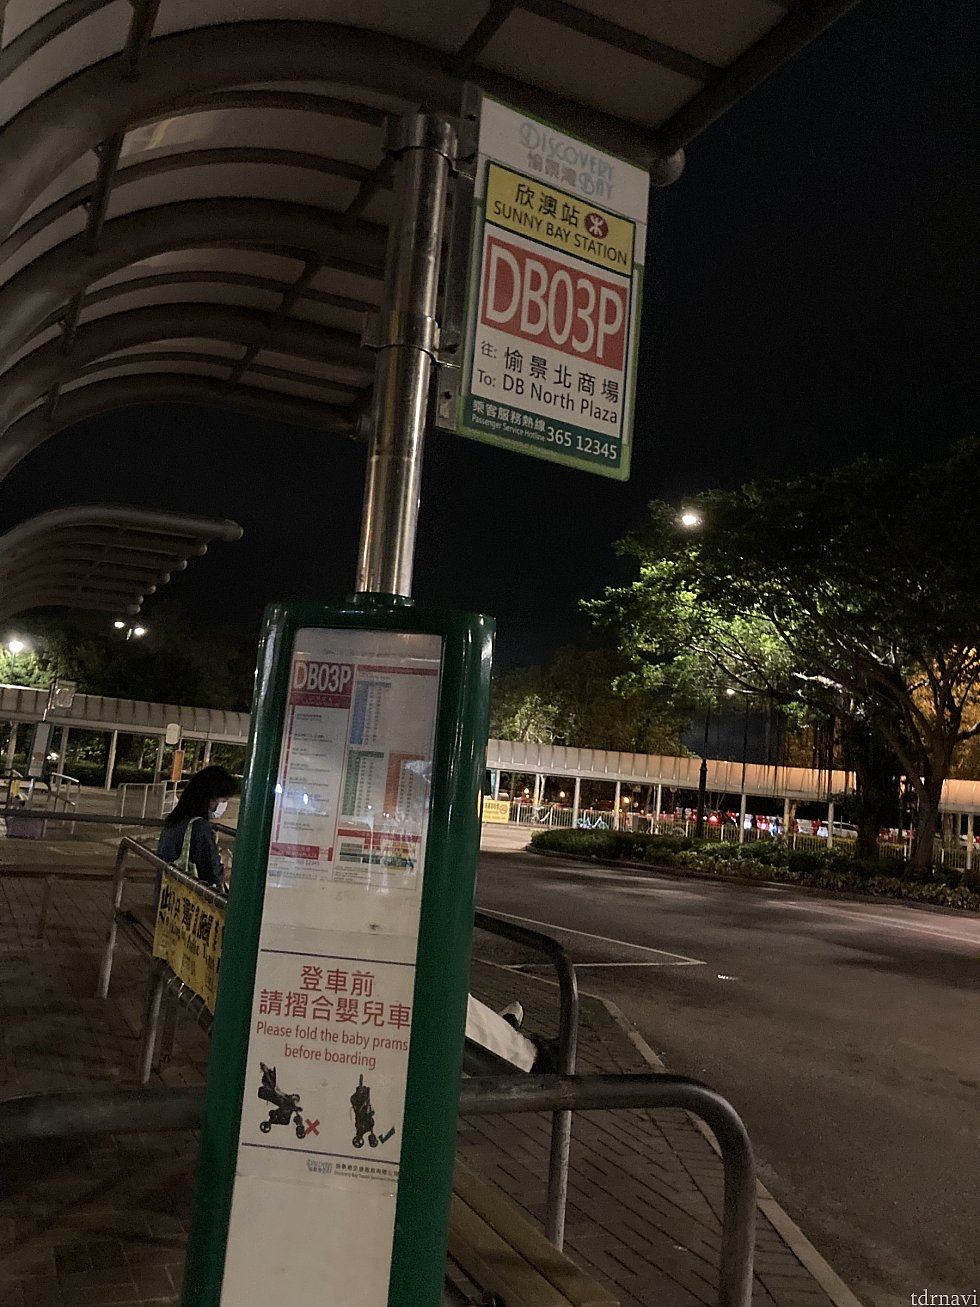 欣澳駅のDB03Pバス乗り場<br>
駅を出た目の前のロータリーにあるのですぐに見つかります。